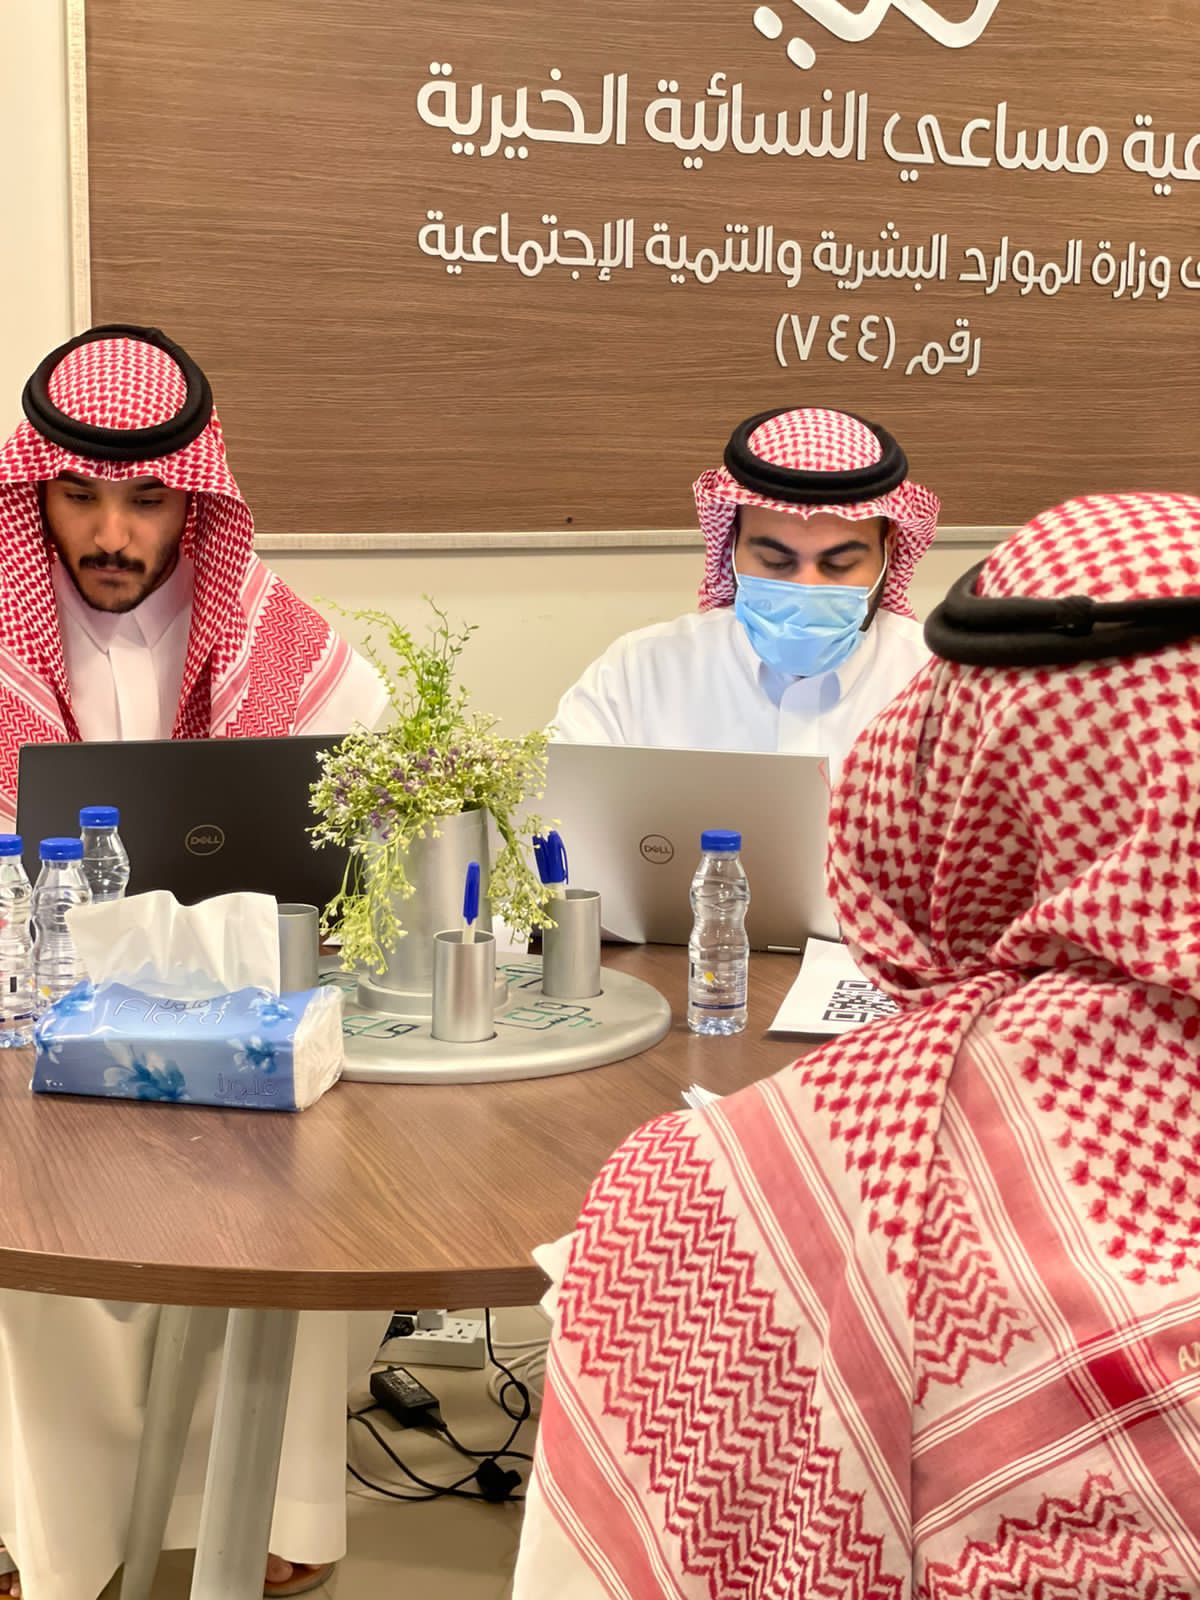 مساعي تطلق لقاء التوظيف في الرياض بأكثر من 300 وظيفة